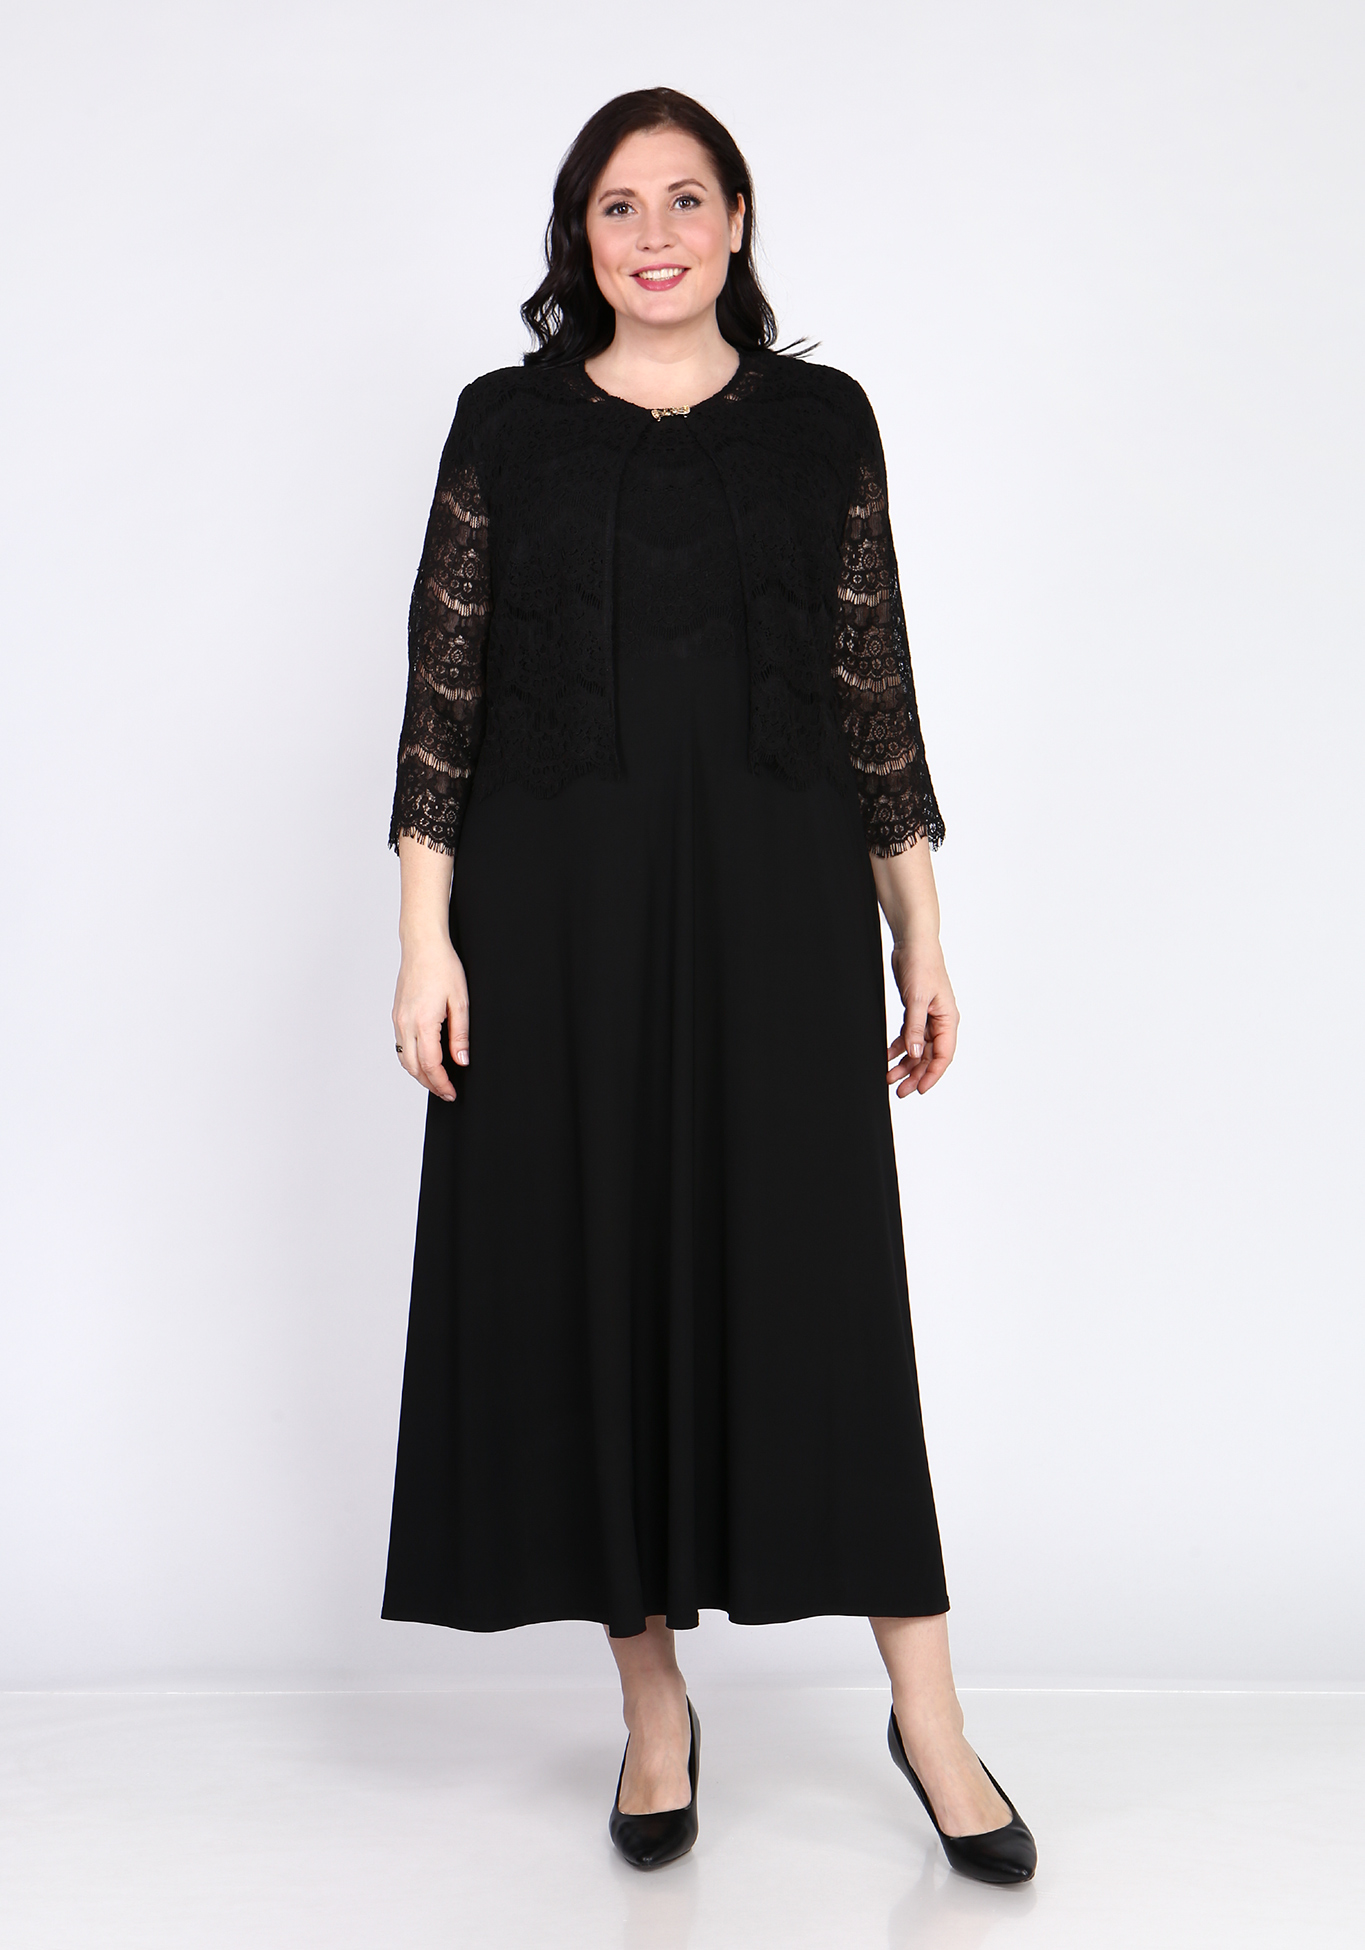 Платье с кардиганом "Люсин" Bel Fiore, размер 50, цвет черный - фото 1